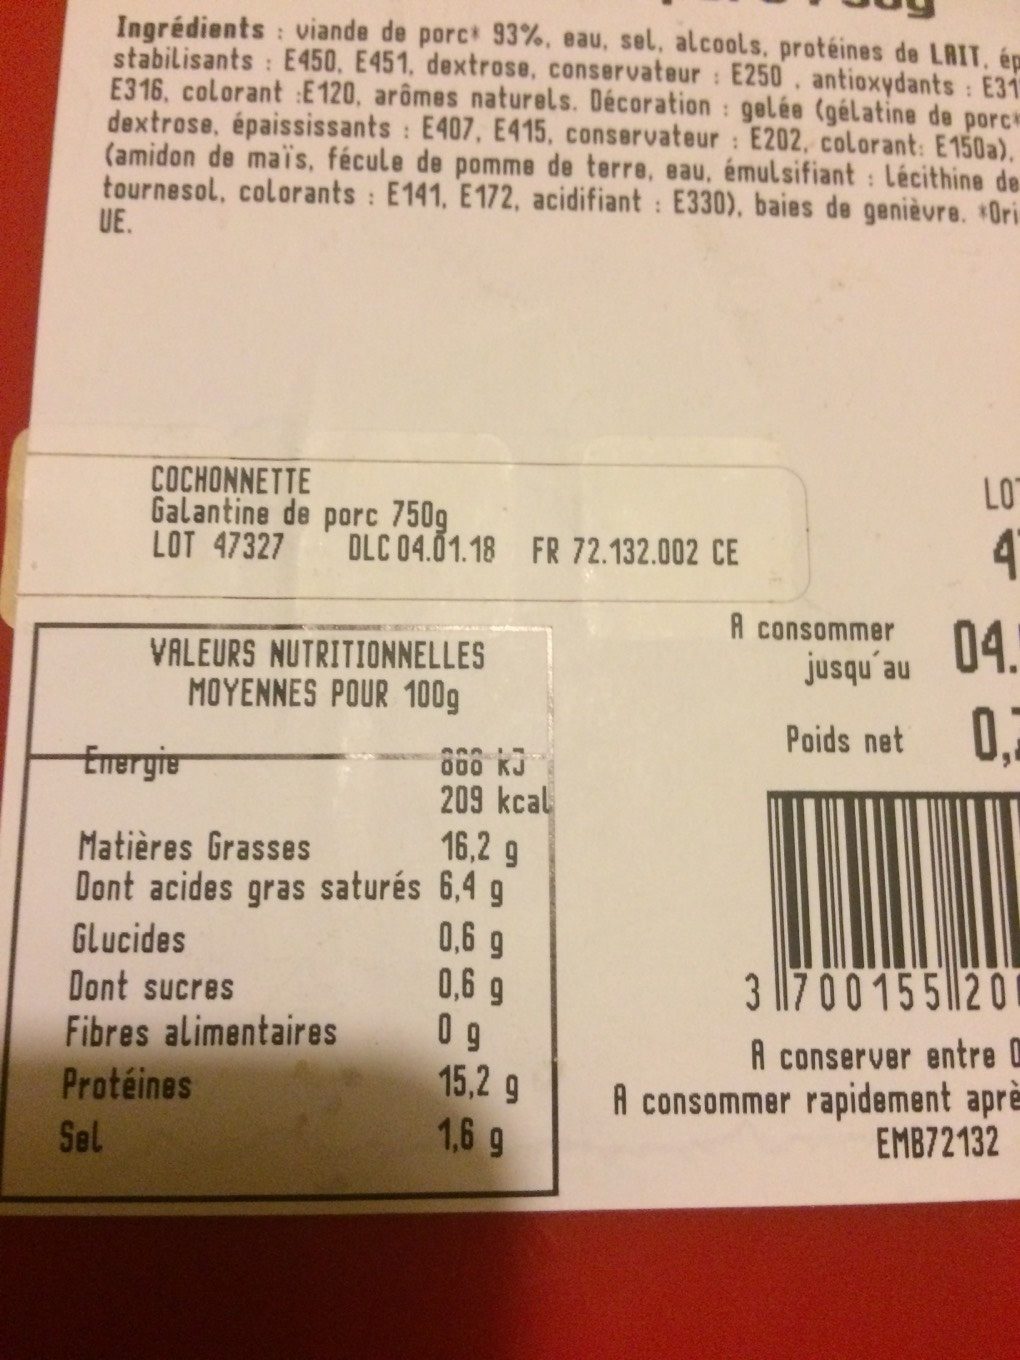 Cochonnette galantine de porc 750g - Nutrition facts - fr